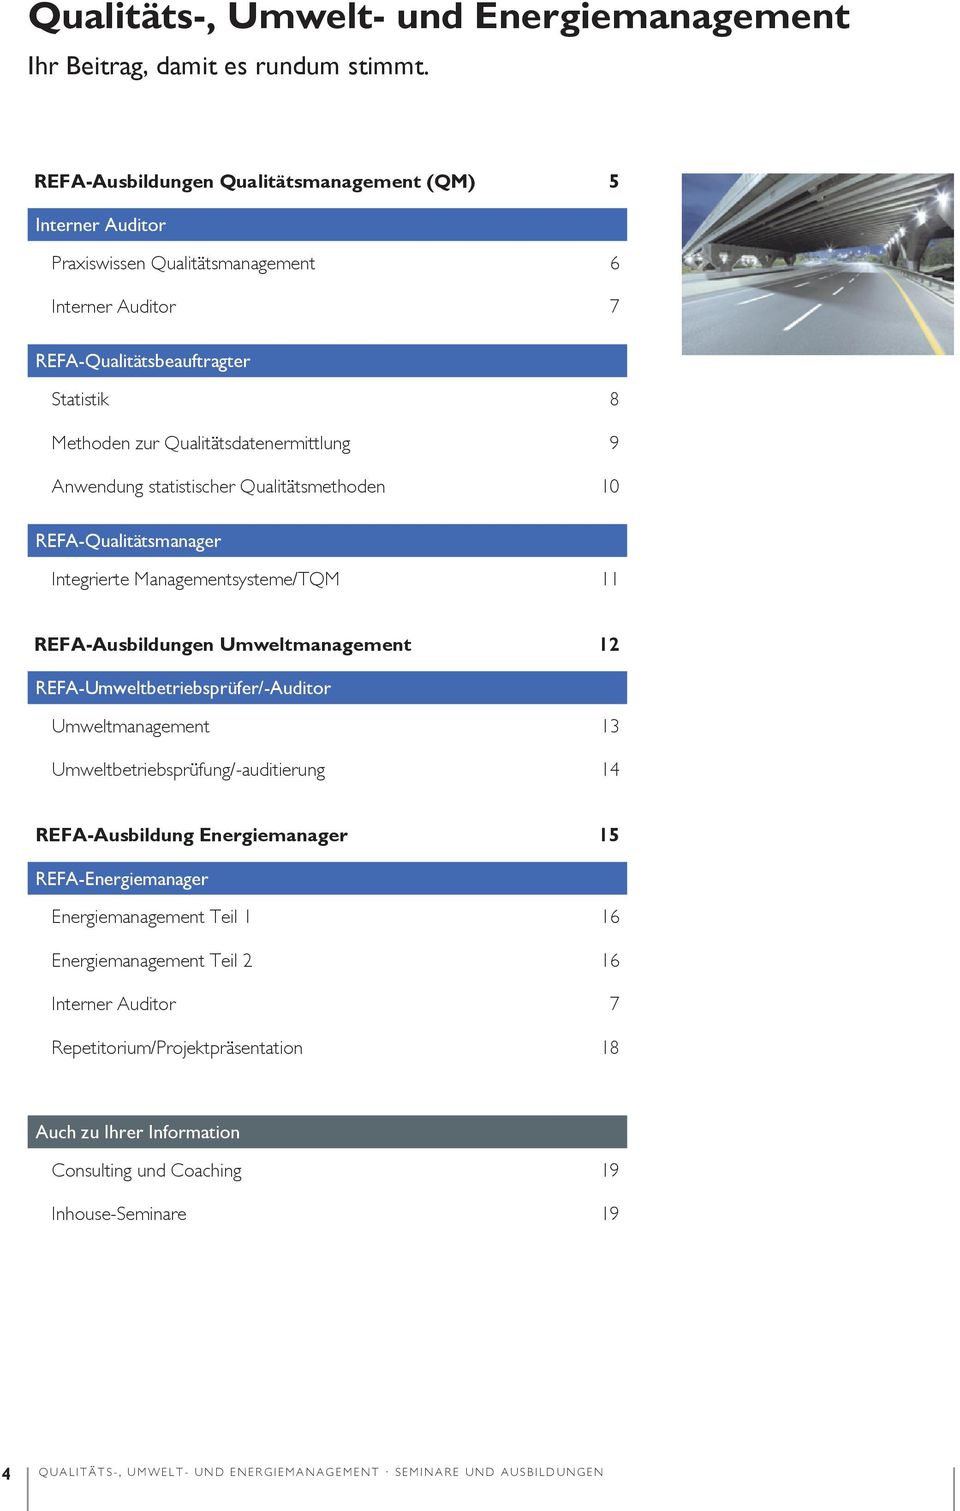 Qualitätsdatenermittlung 9 Anwendung statistischer Qualitätsmethoden 10 REFA-Qualitätsmanager Integrierte Managementsysteme/TQM 11 -REFA-Ausbildungen Umweltmanagement 12